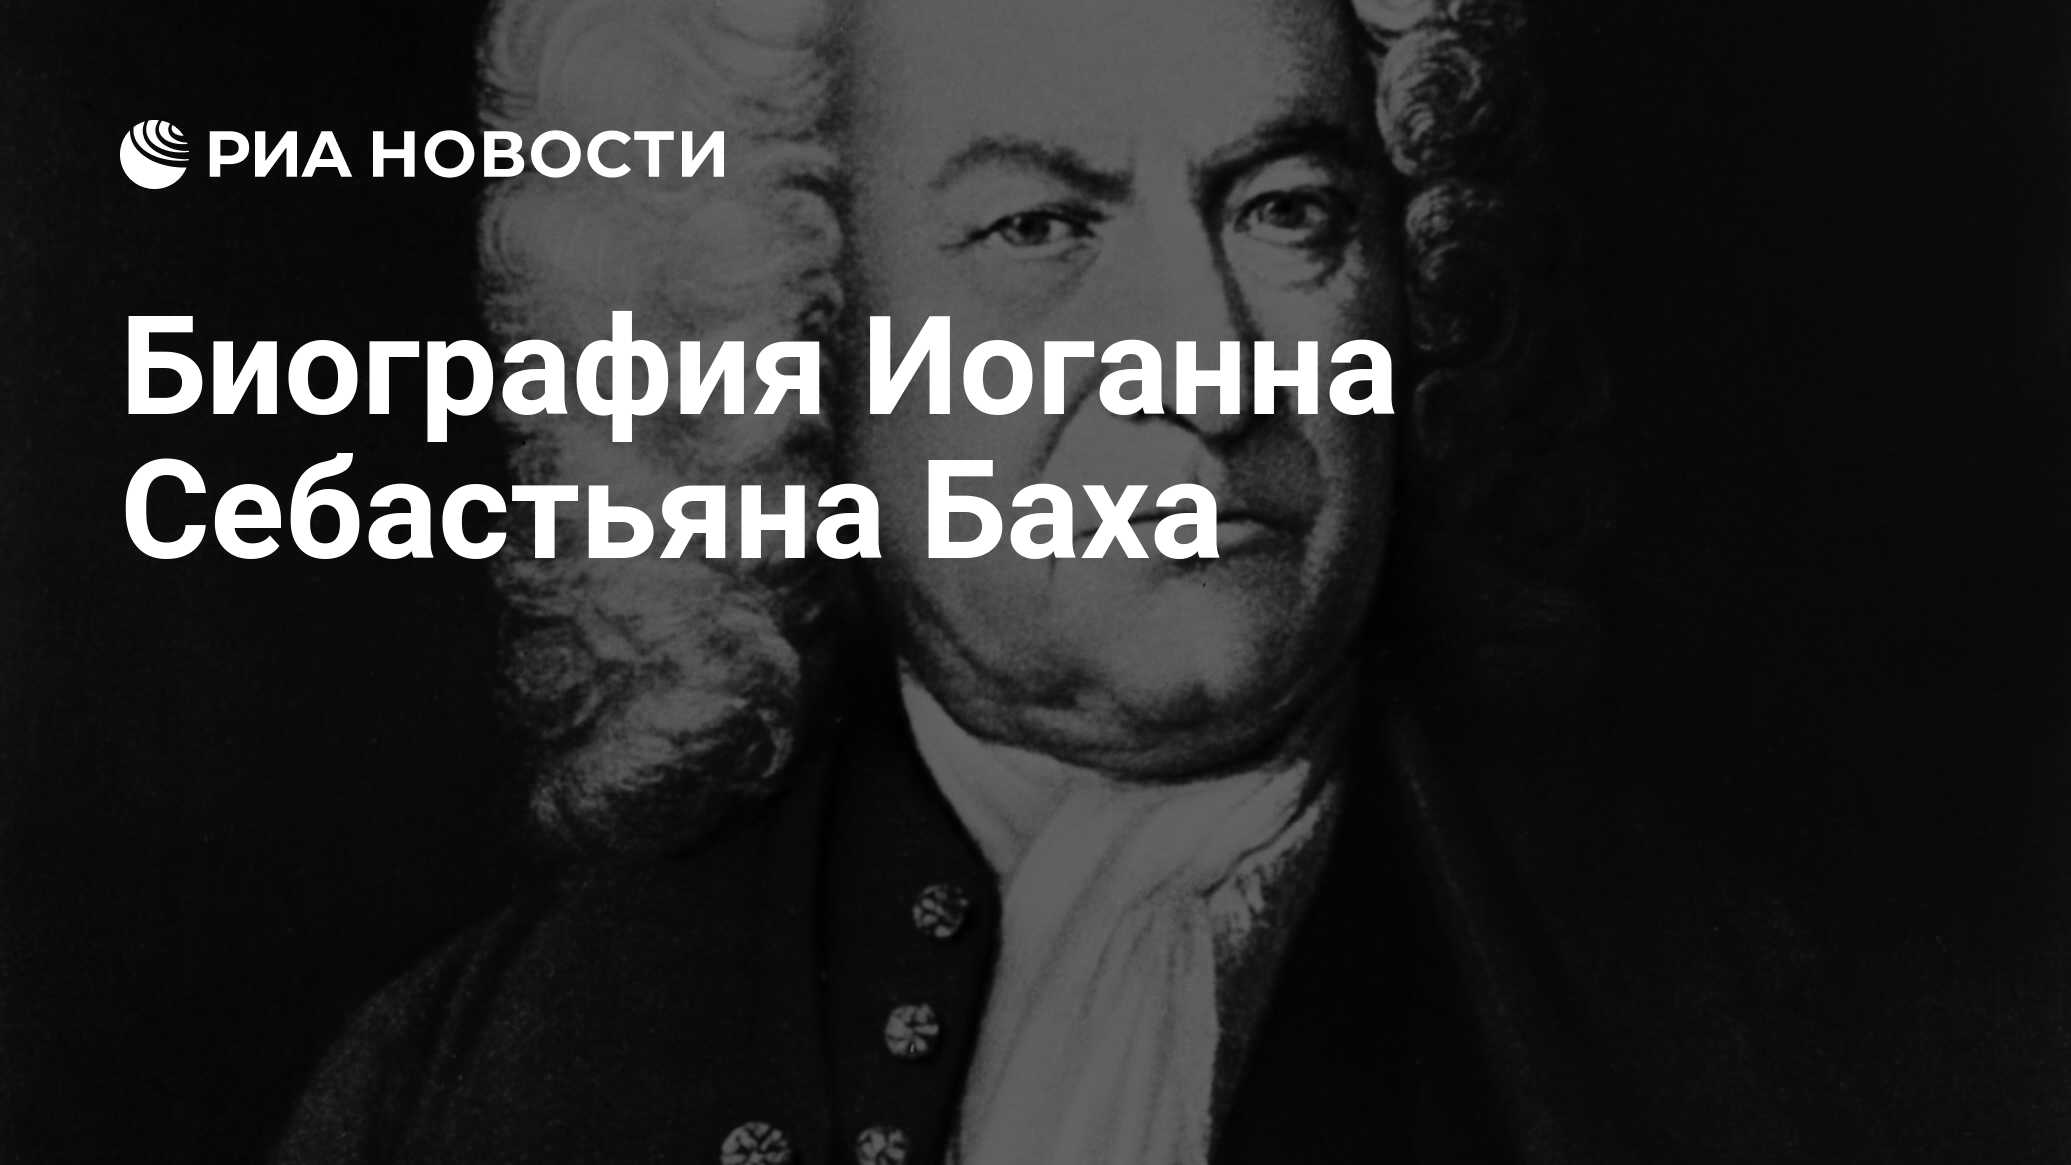 Биография Иоганна Себастьяна Баха - РИА Новости, 21.03.2015